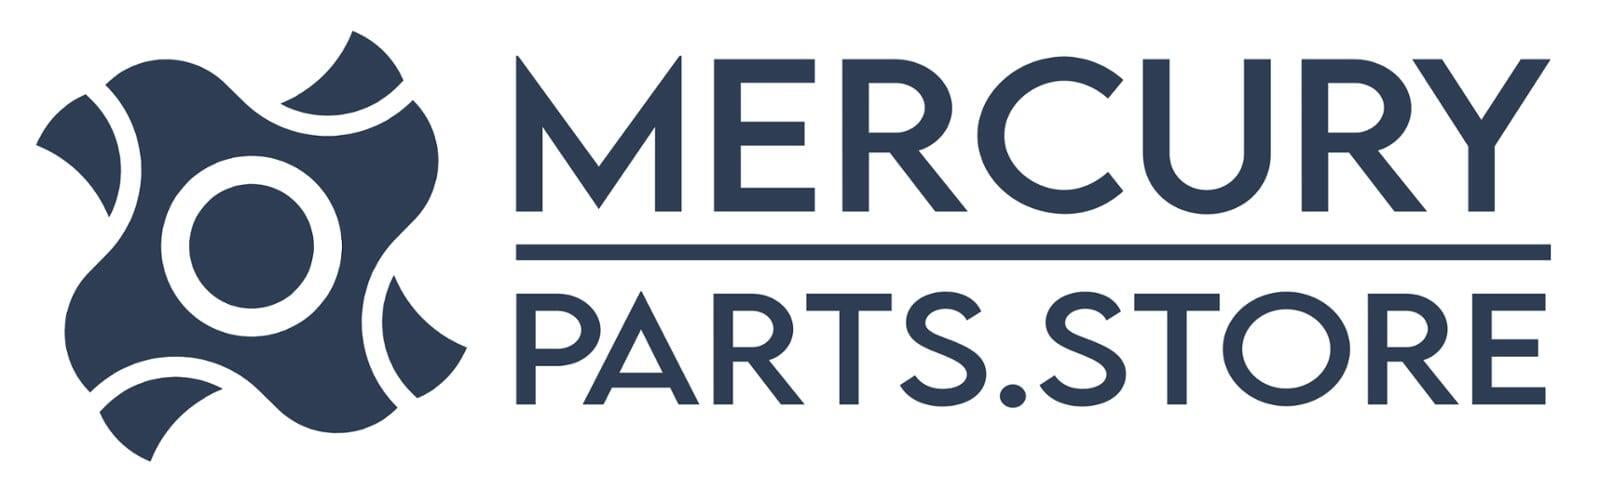 MercuryParts.store